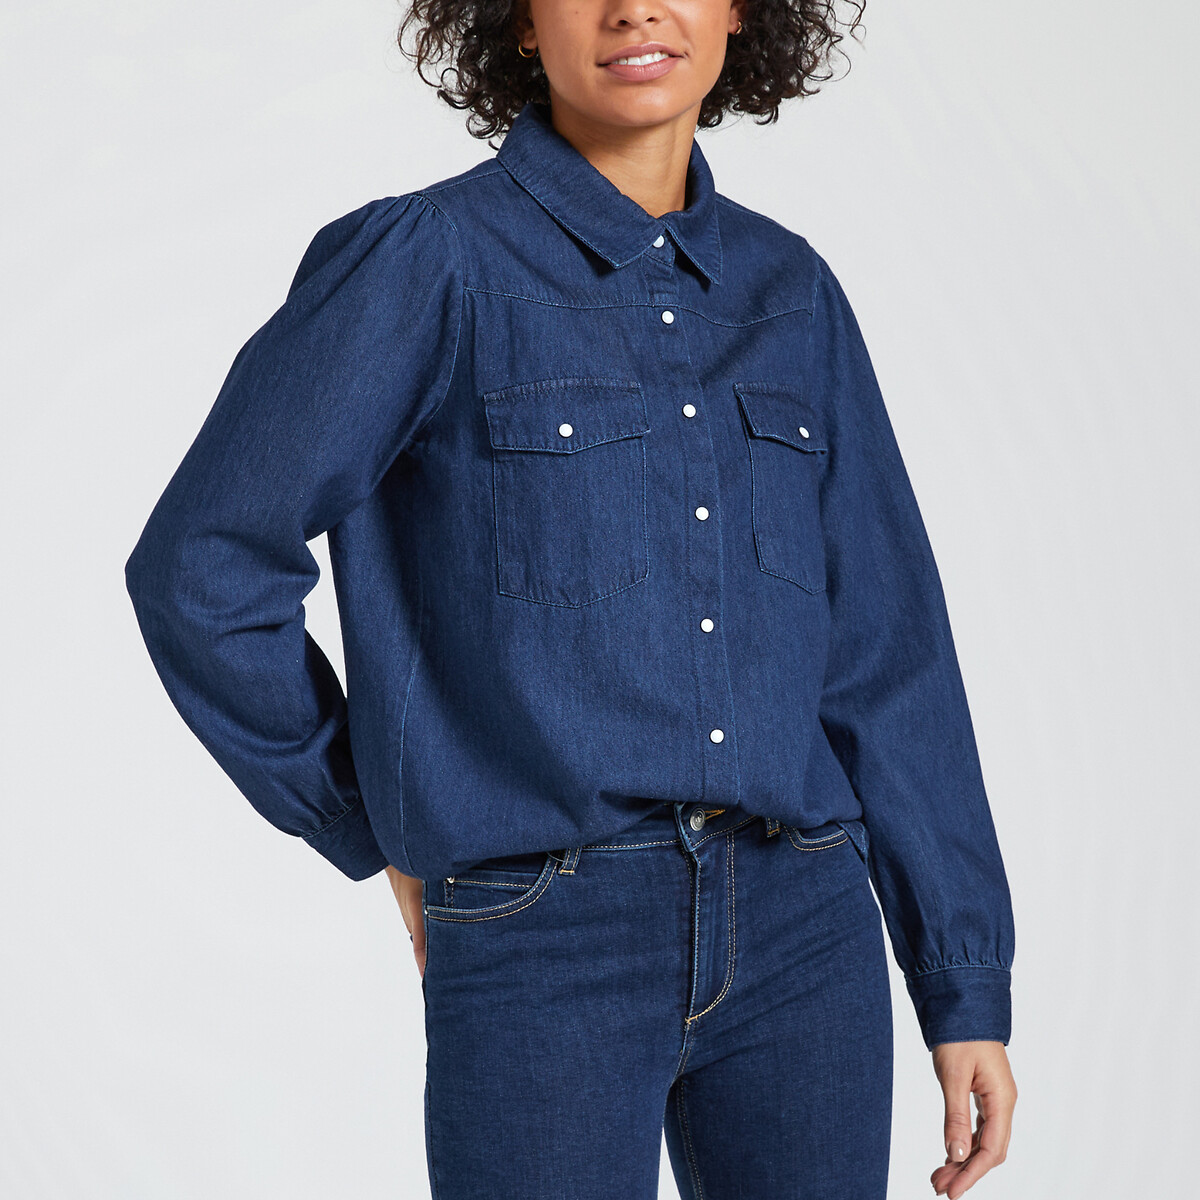 Рубашка из джинсовой ткани с длинными рукавами XS синий комбинезон с шортами из джинсовой ткани с короткими рукавами 18 мес 81 см синий